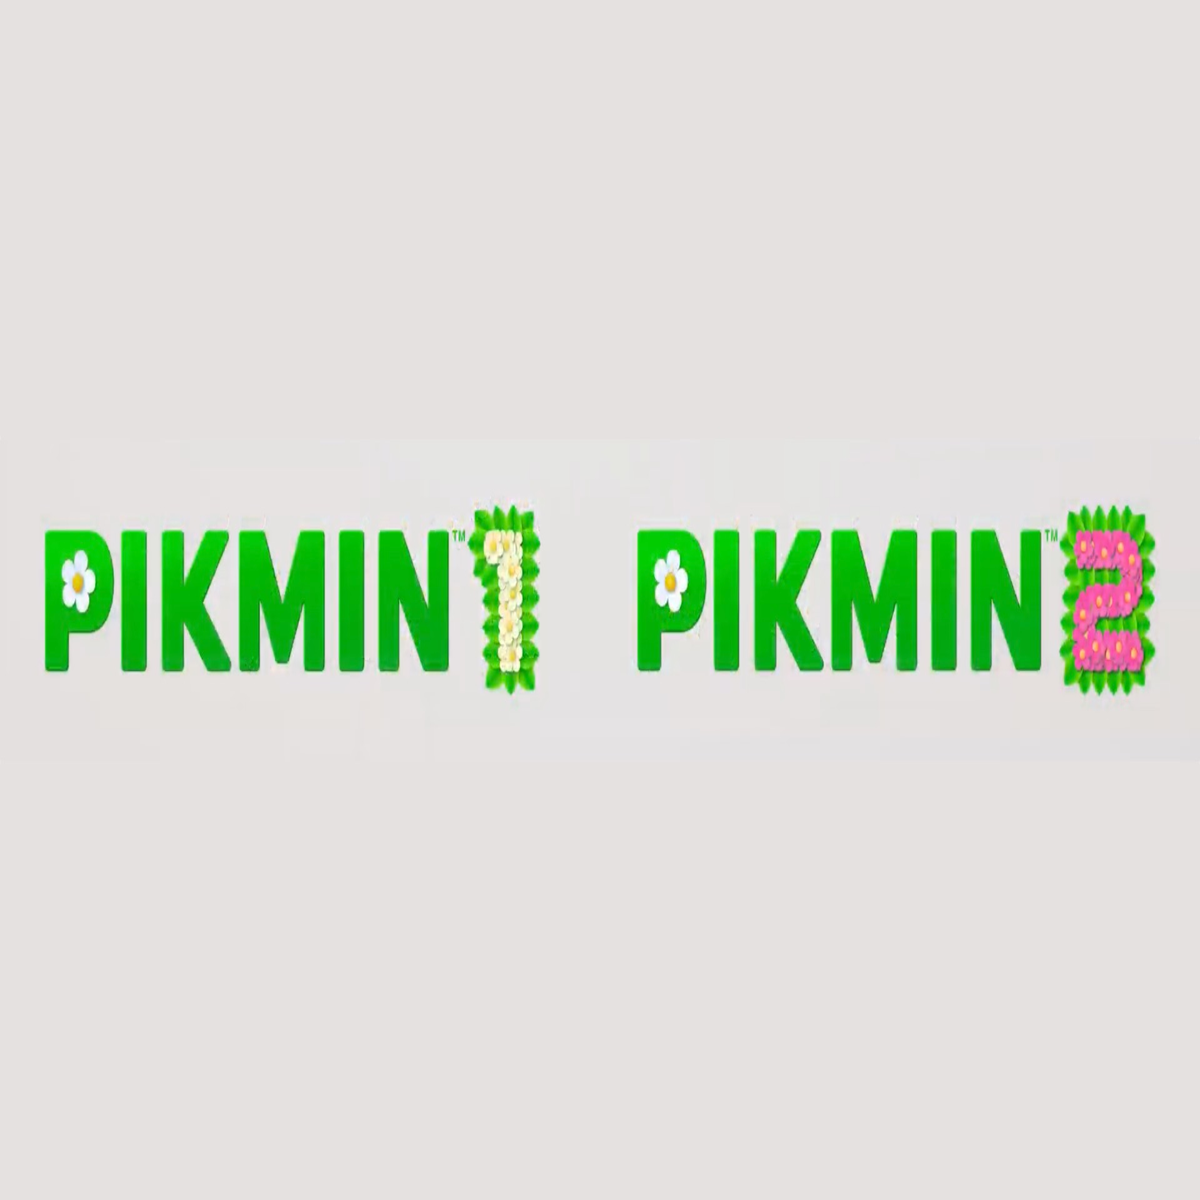 Pikmin 1 + 2 ::.. Nintendo Switch